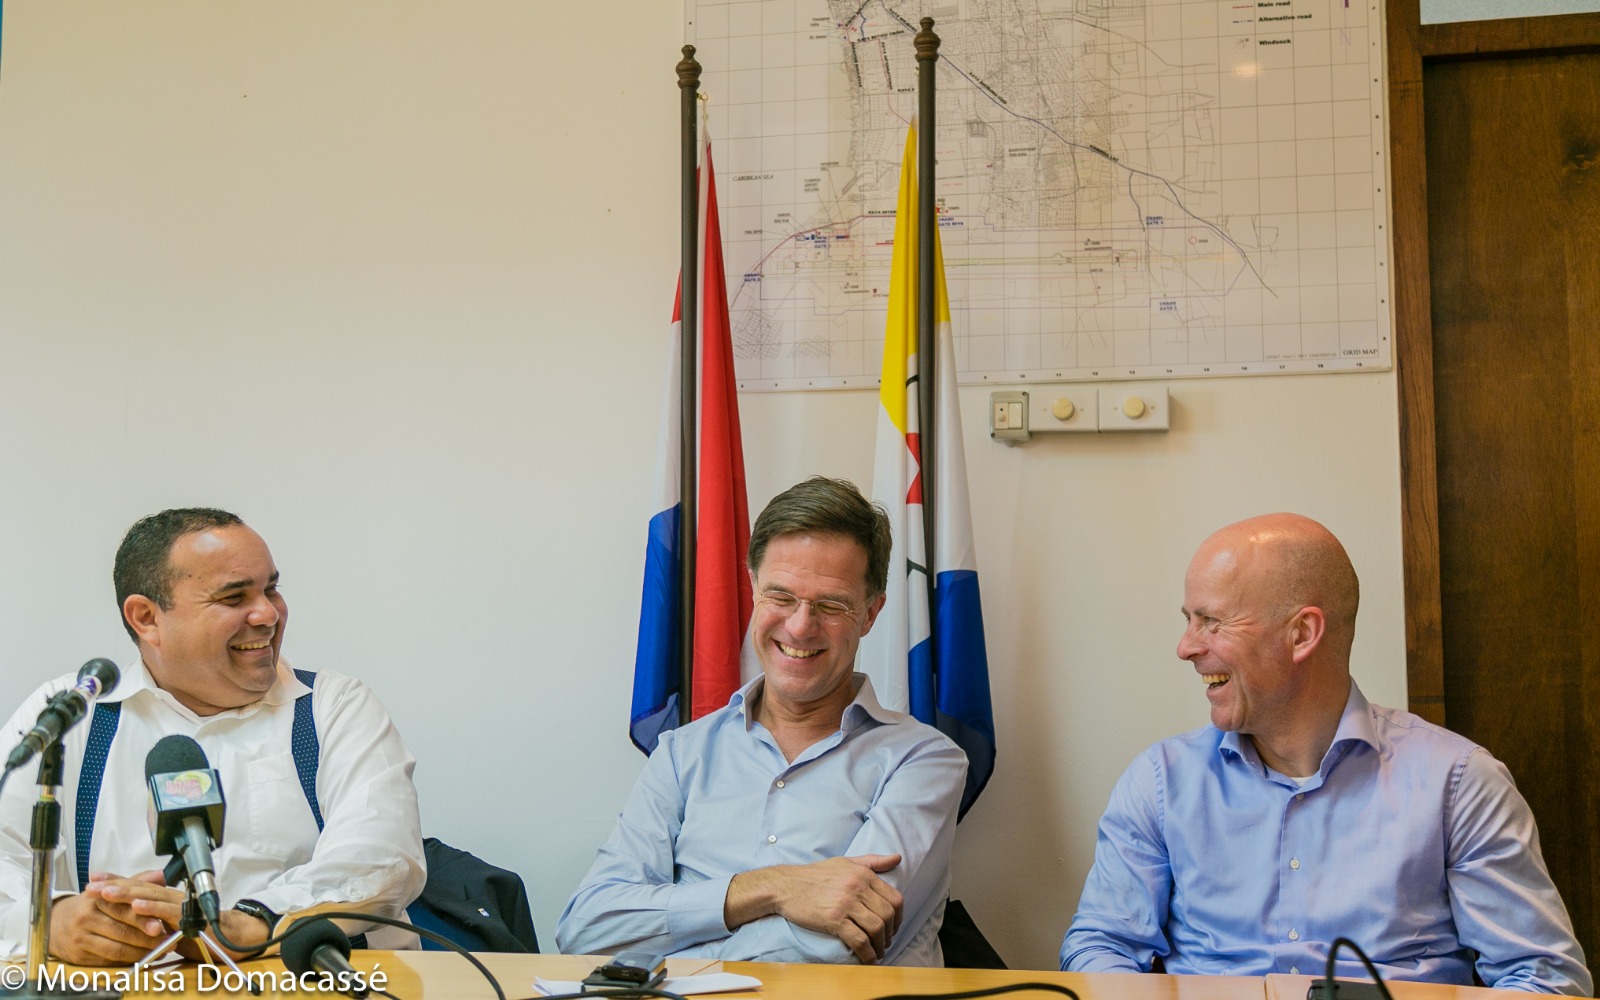 Ontspannen Minister President Rutte zeer positief over de toekomst van Bonaire